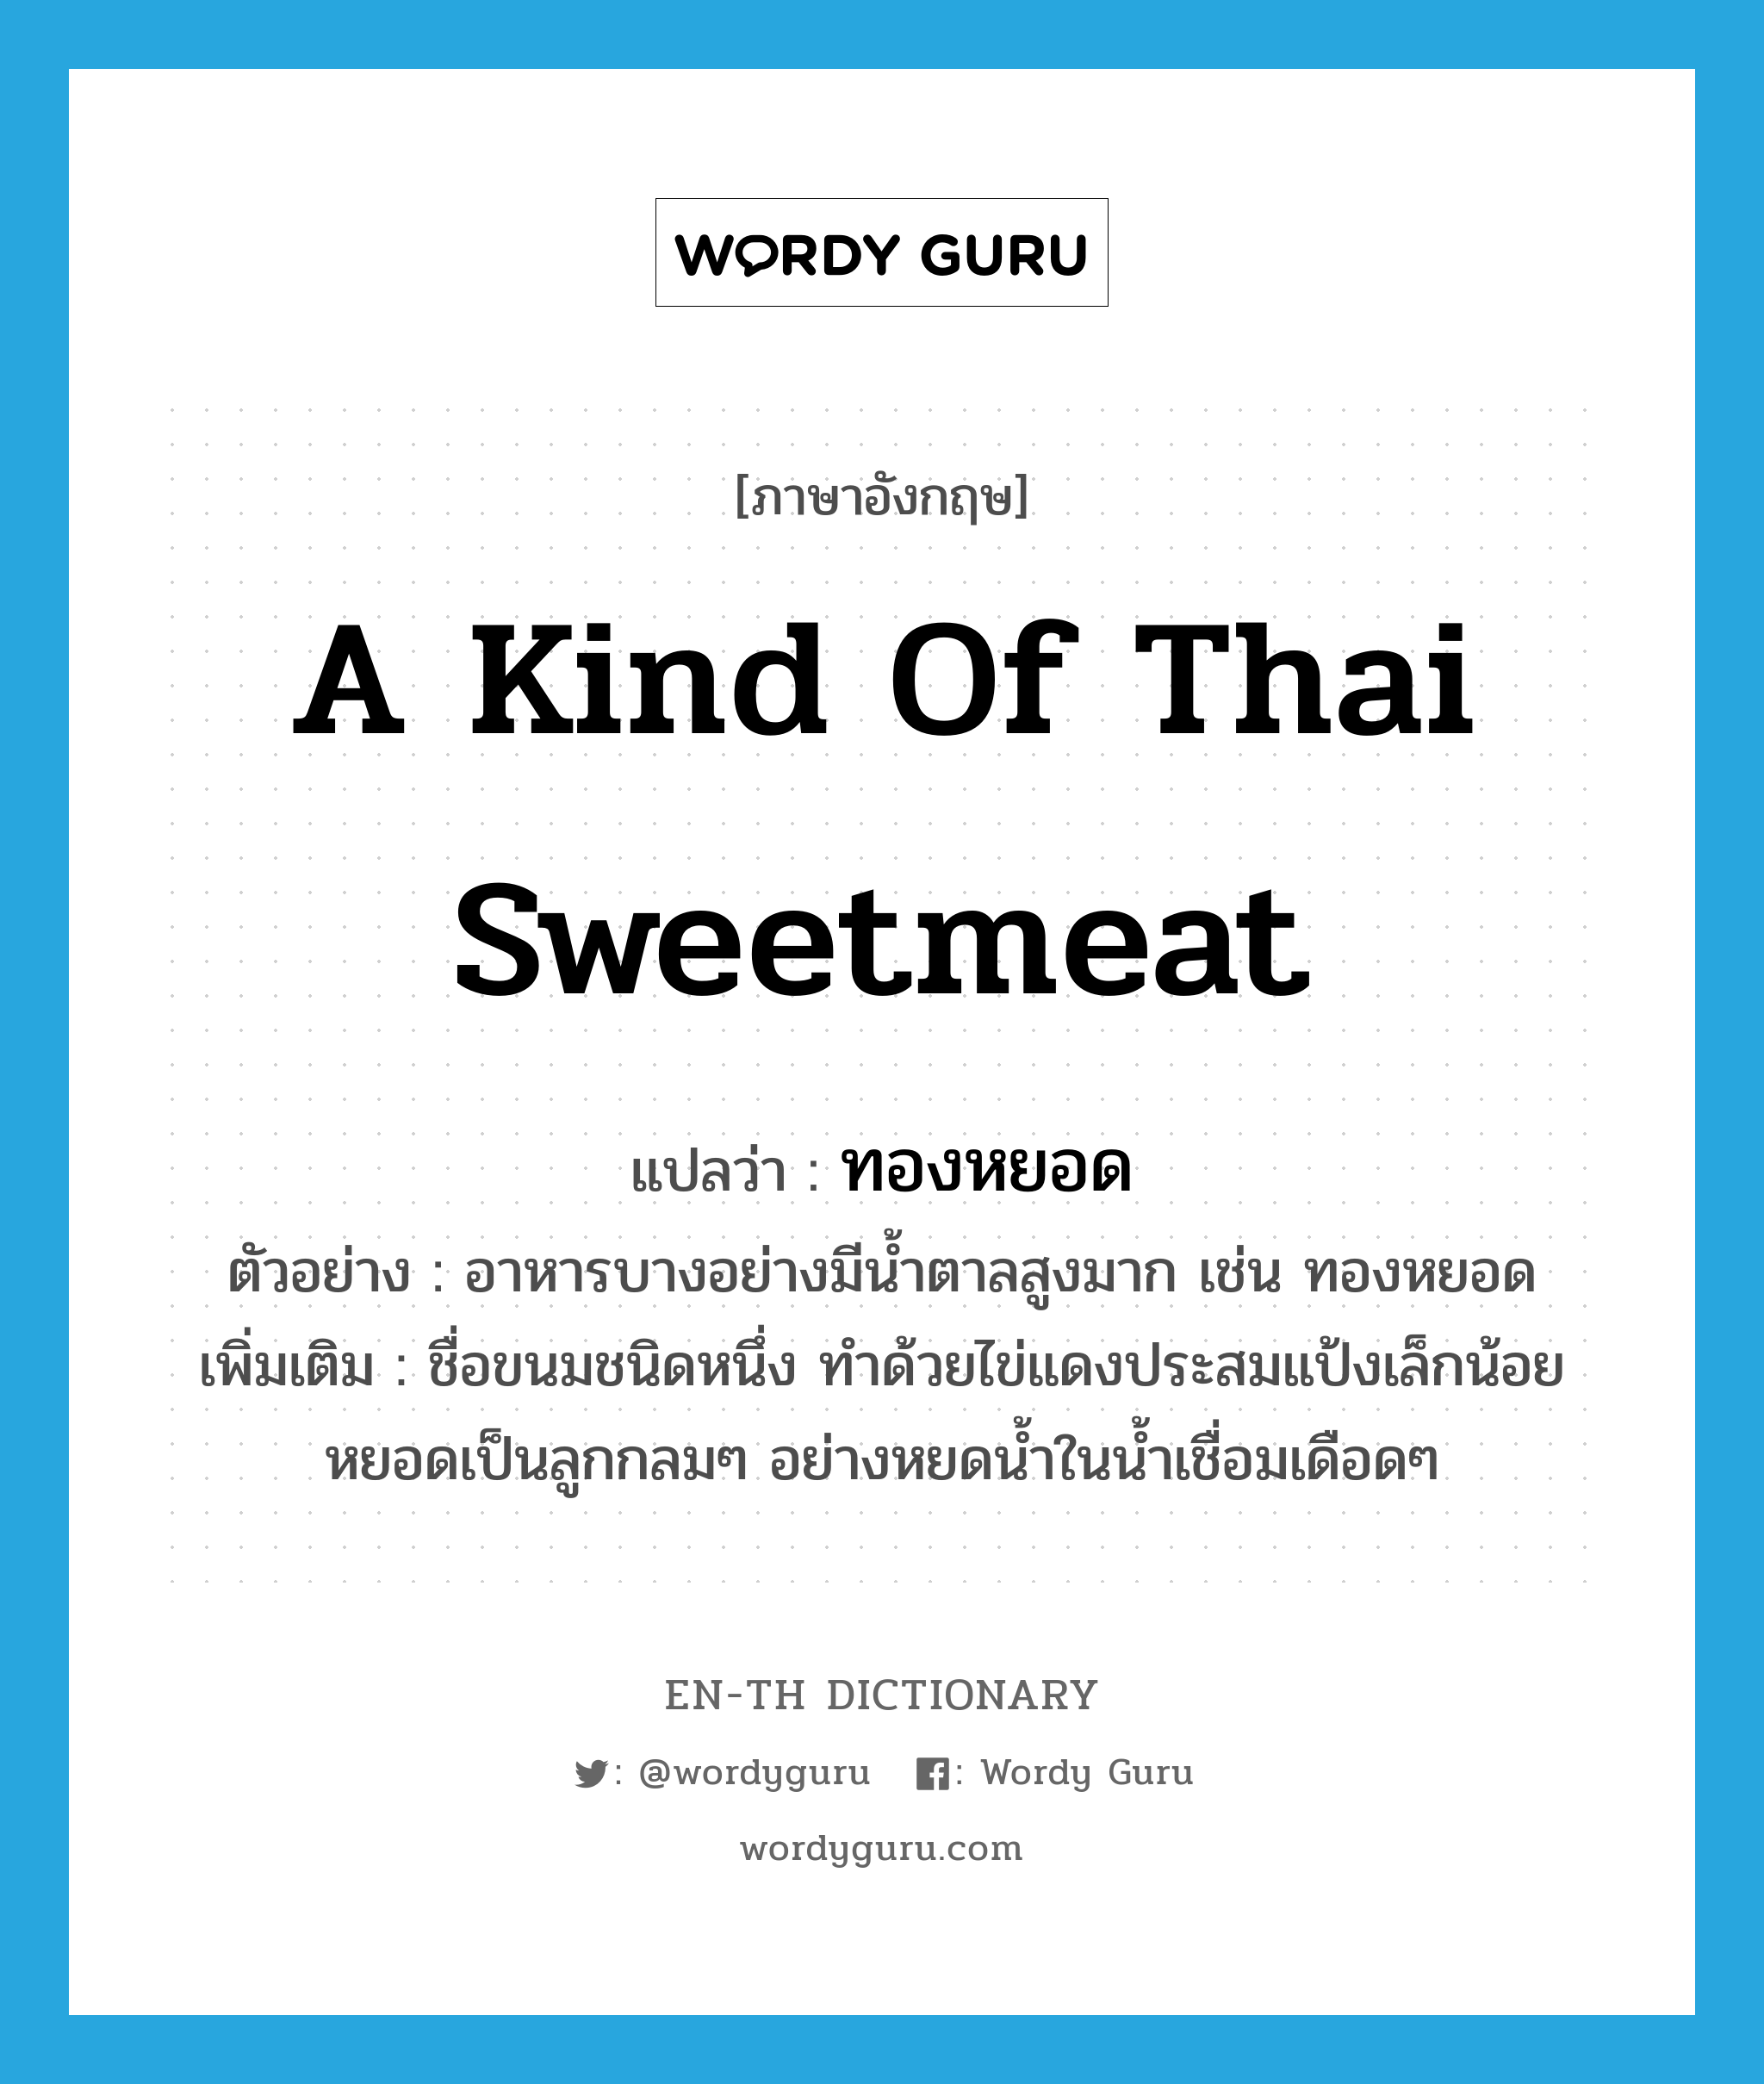 a kind of Thai sweetmeat แปลว่า? คำศัพท์ในกลุ่มประเภท N, คำศัพท์ภาษาอังกฤษ a kind of Thai sweetmeat แปลว่า ทองหยอด ประเภท N ตัวอย่าง อาหารบางอย่างมีน้ำตาลสูงมาก เช่น ทองหยอด เพิ่มเติม ชื่อขนมชนิดหนึ่ง ทำด้วยไข่แดงประสมแป้งเล็กน้อย หยอดเป็นลูกกลมๆ อย่างหยดน้ำในน้ำเชื่อมเดือดๆ หมวด N